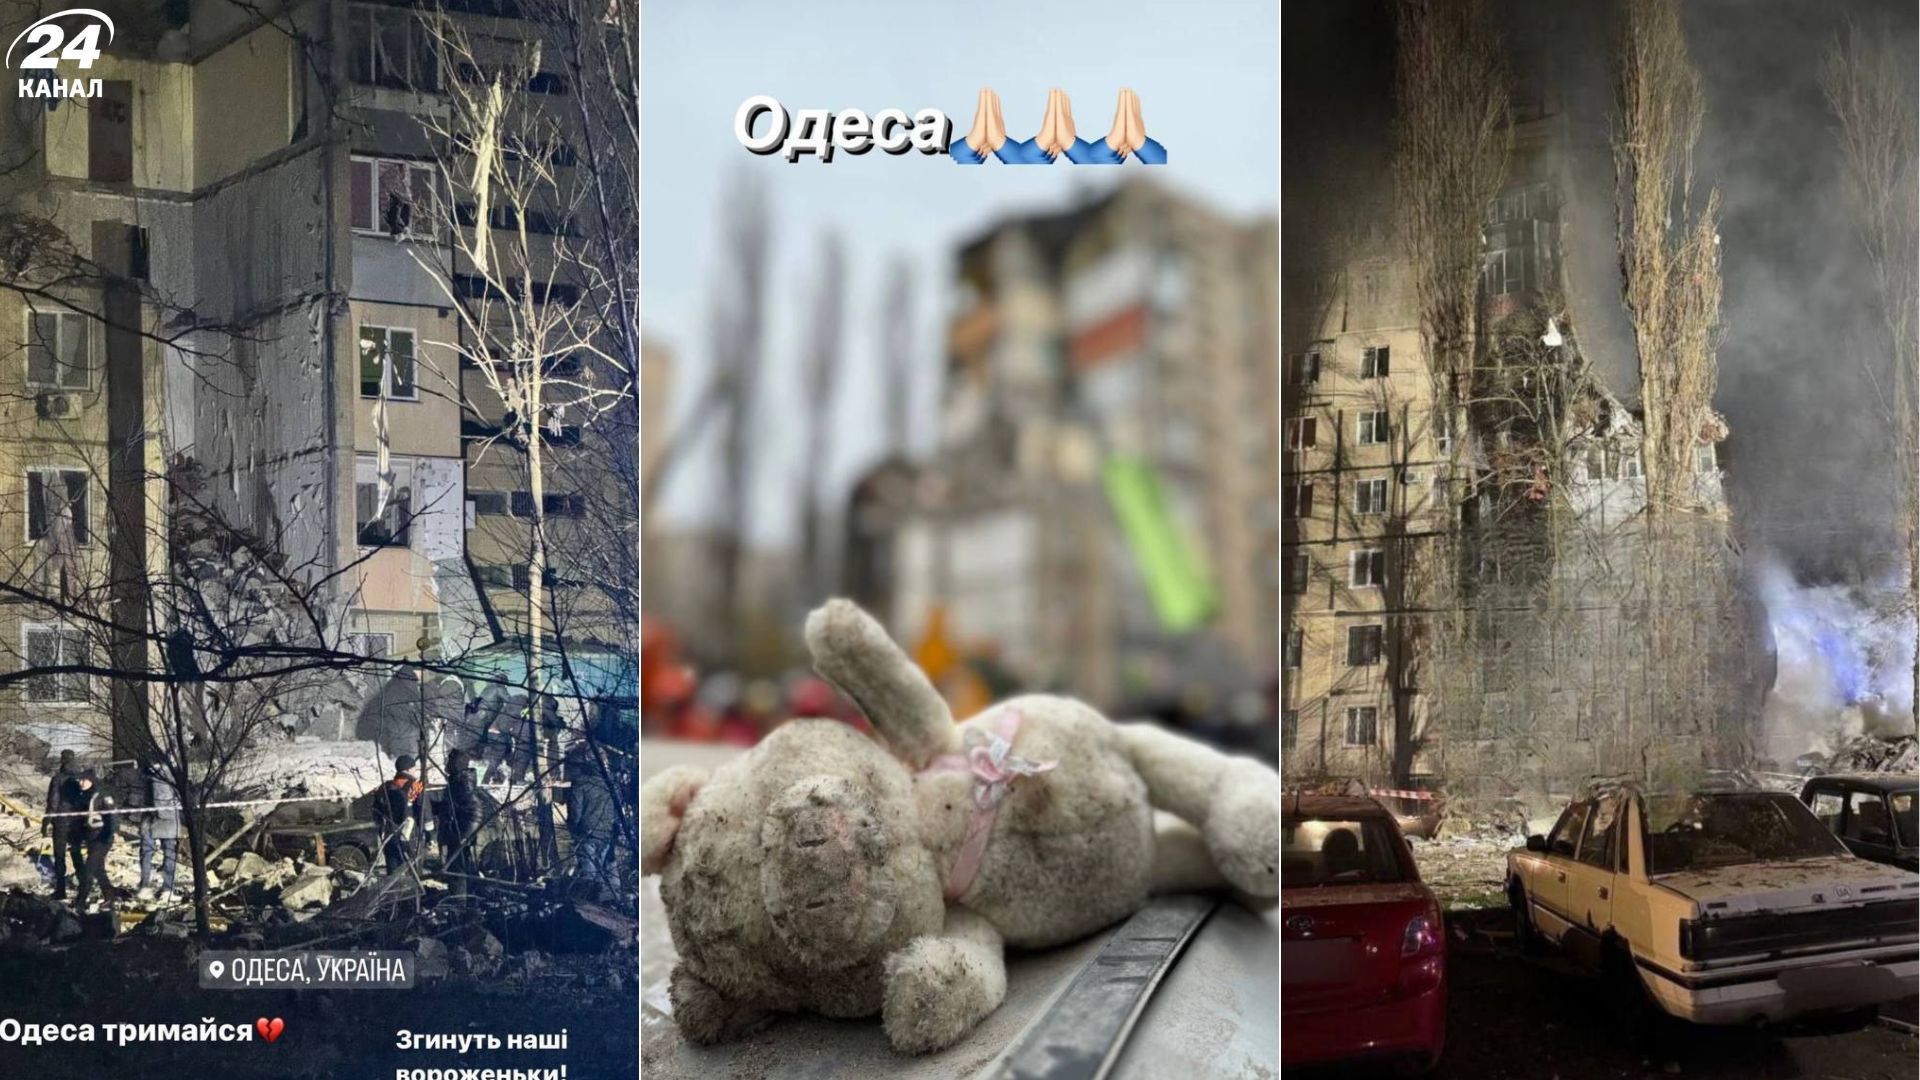 Терор продовжується, – українські зірки емоційно реагують на цинічний обстріл Одеси росіянами - Show